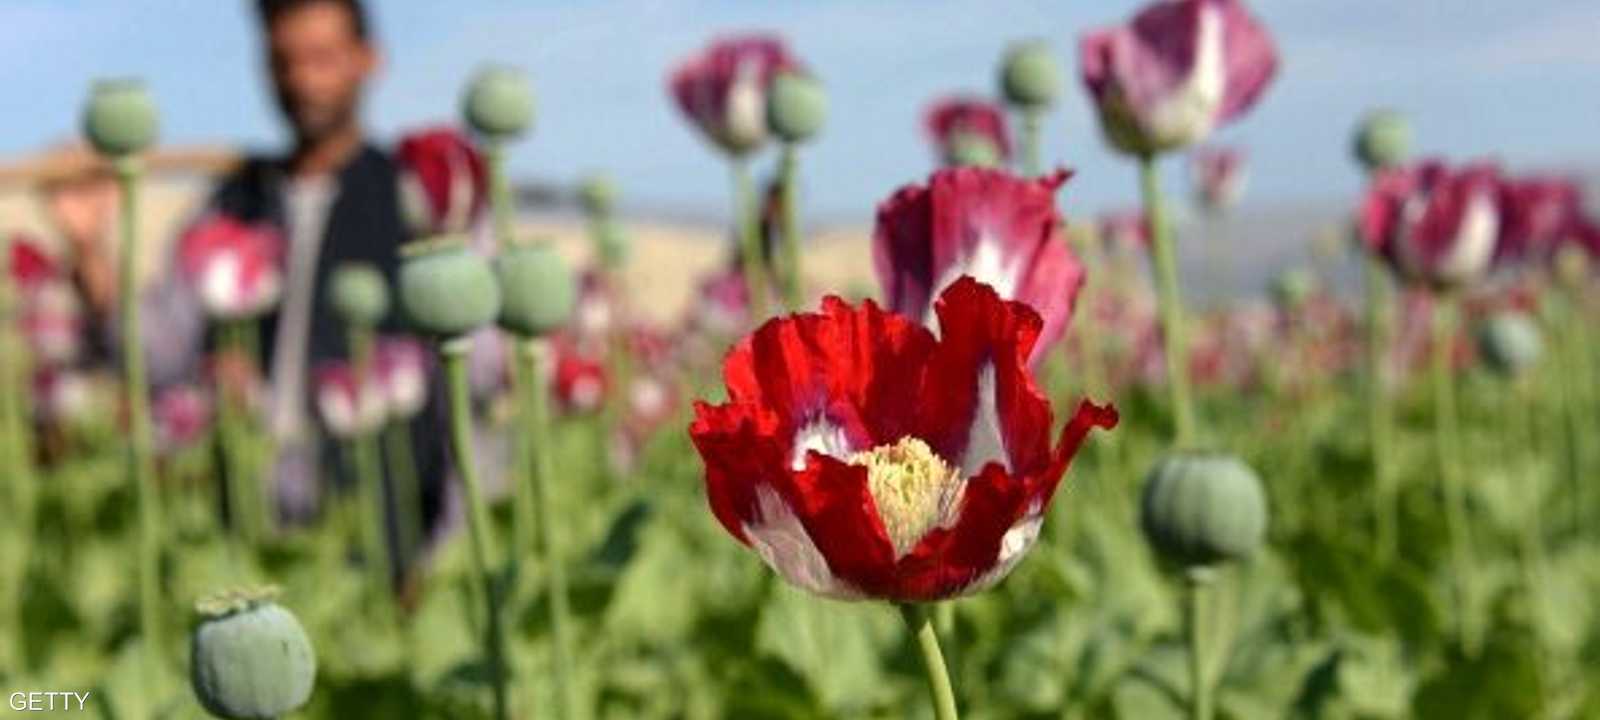 أفغانستان تنتج أكثر من 80 بالمئة من أفيون العالم